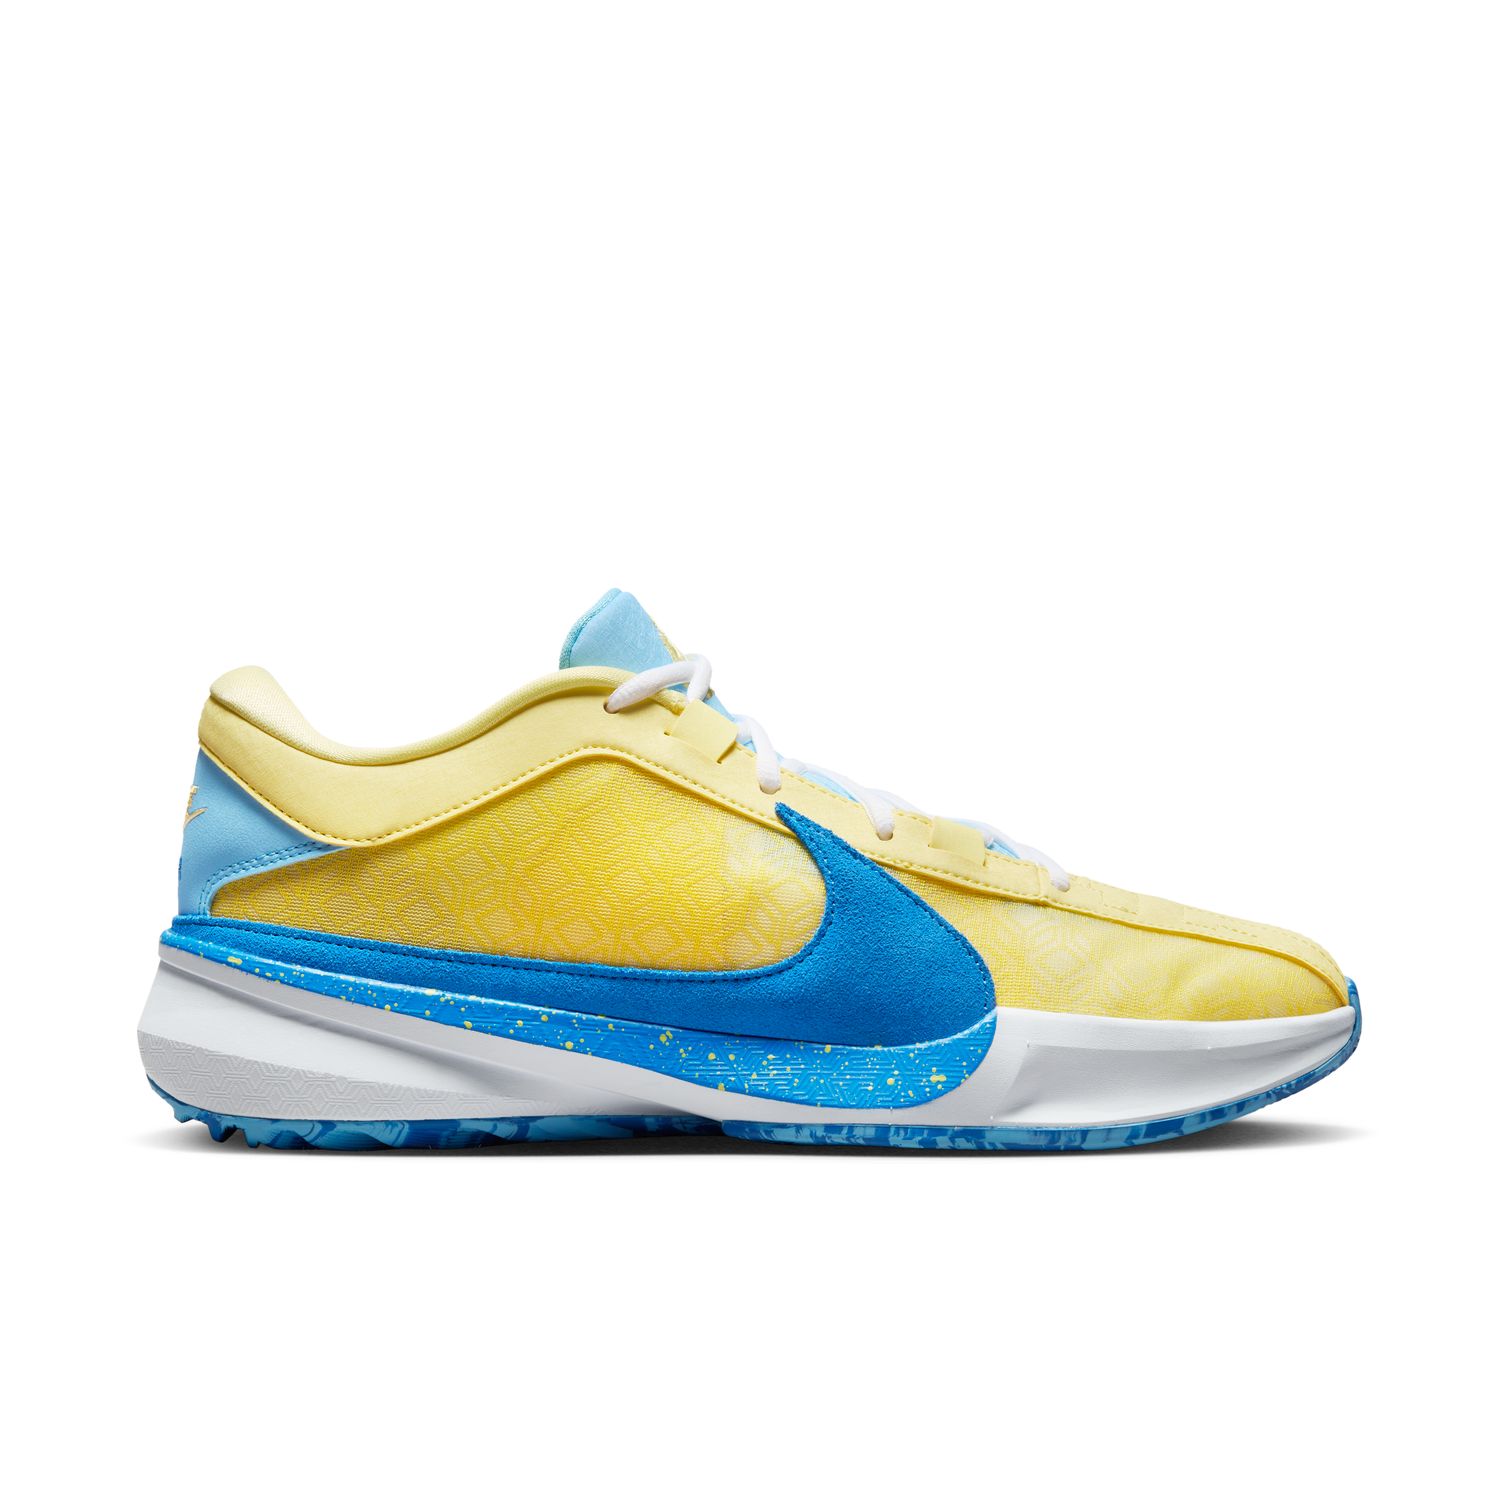 Nike Giannis Freak 5 "Soft Yellow" - Pánske - Tenisky Nike - Žlté - DX4985-700 - Veľkosť: 42.5